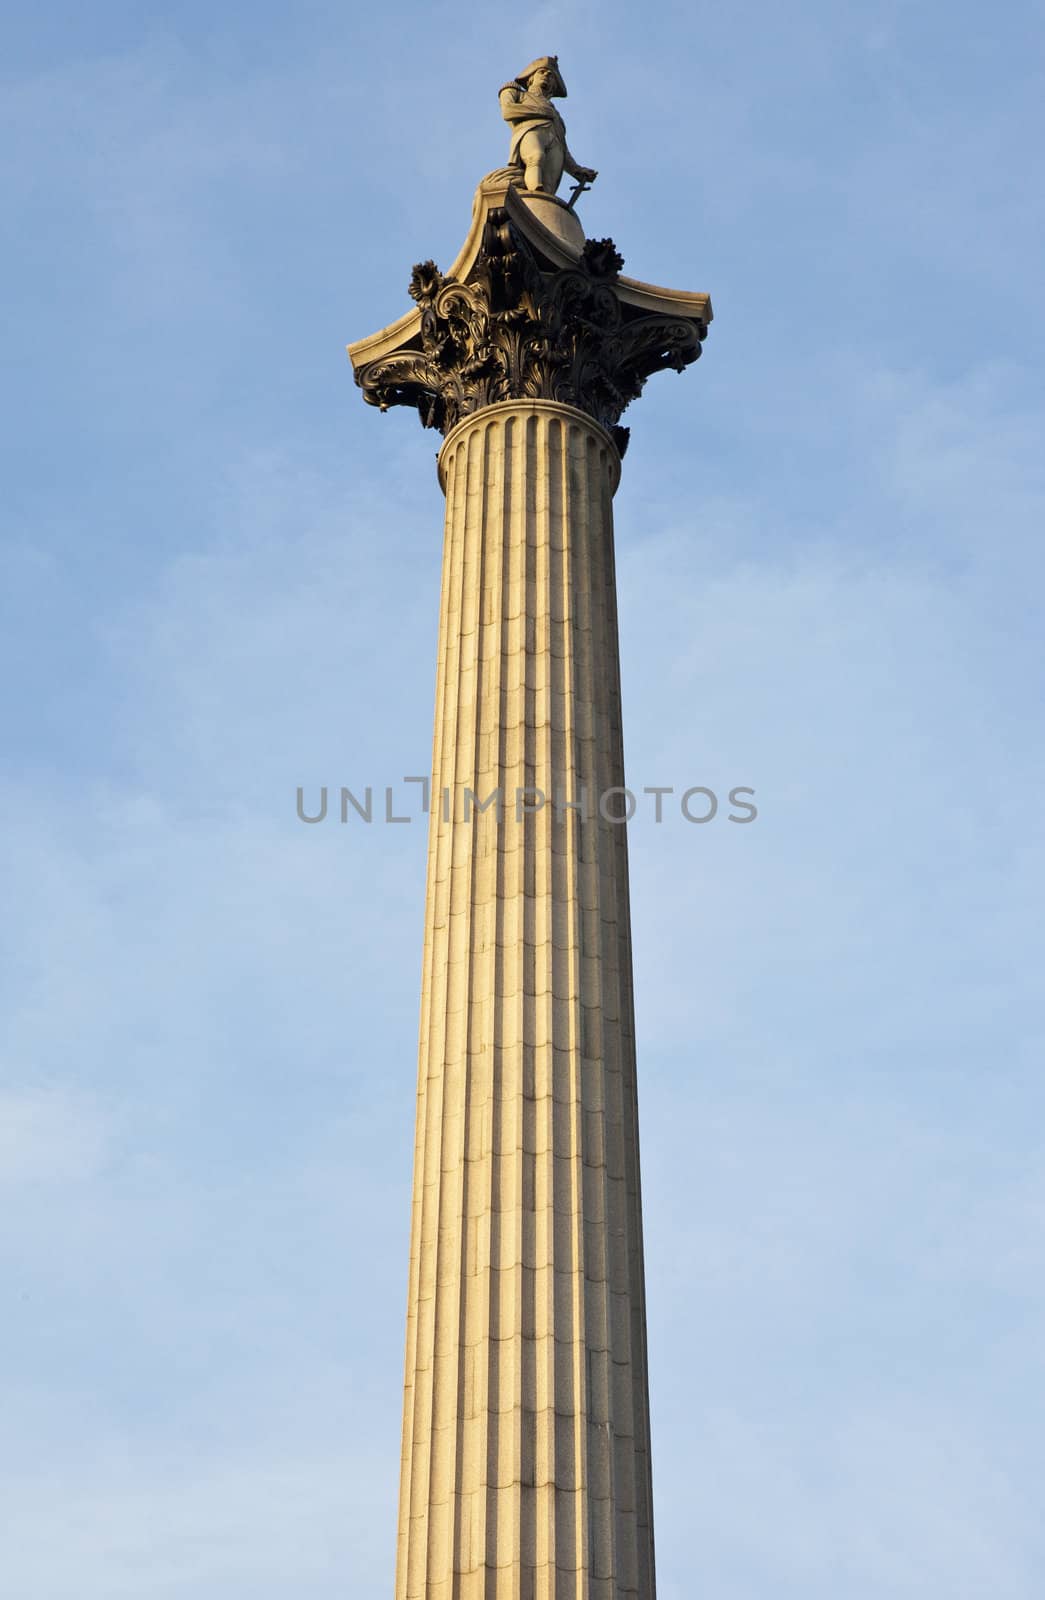 Nelson's Column in Trafalgar Square in London.